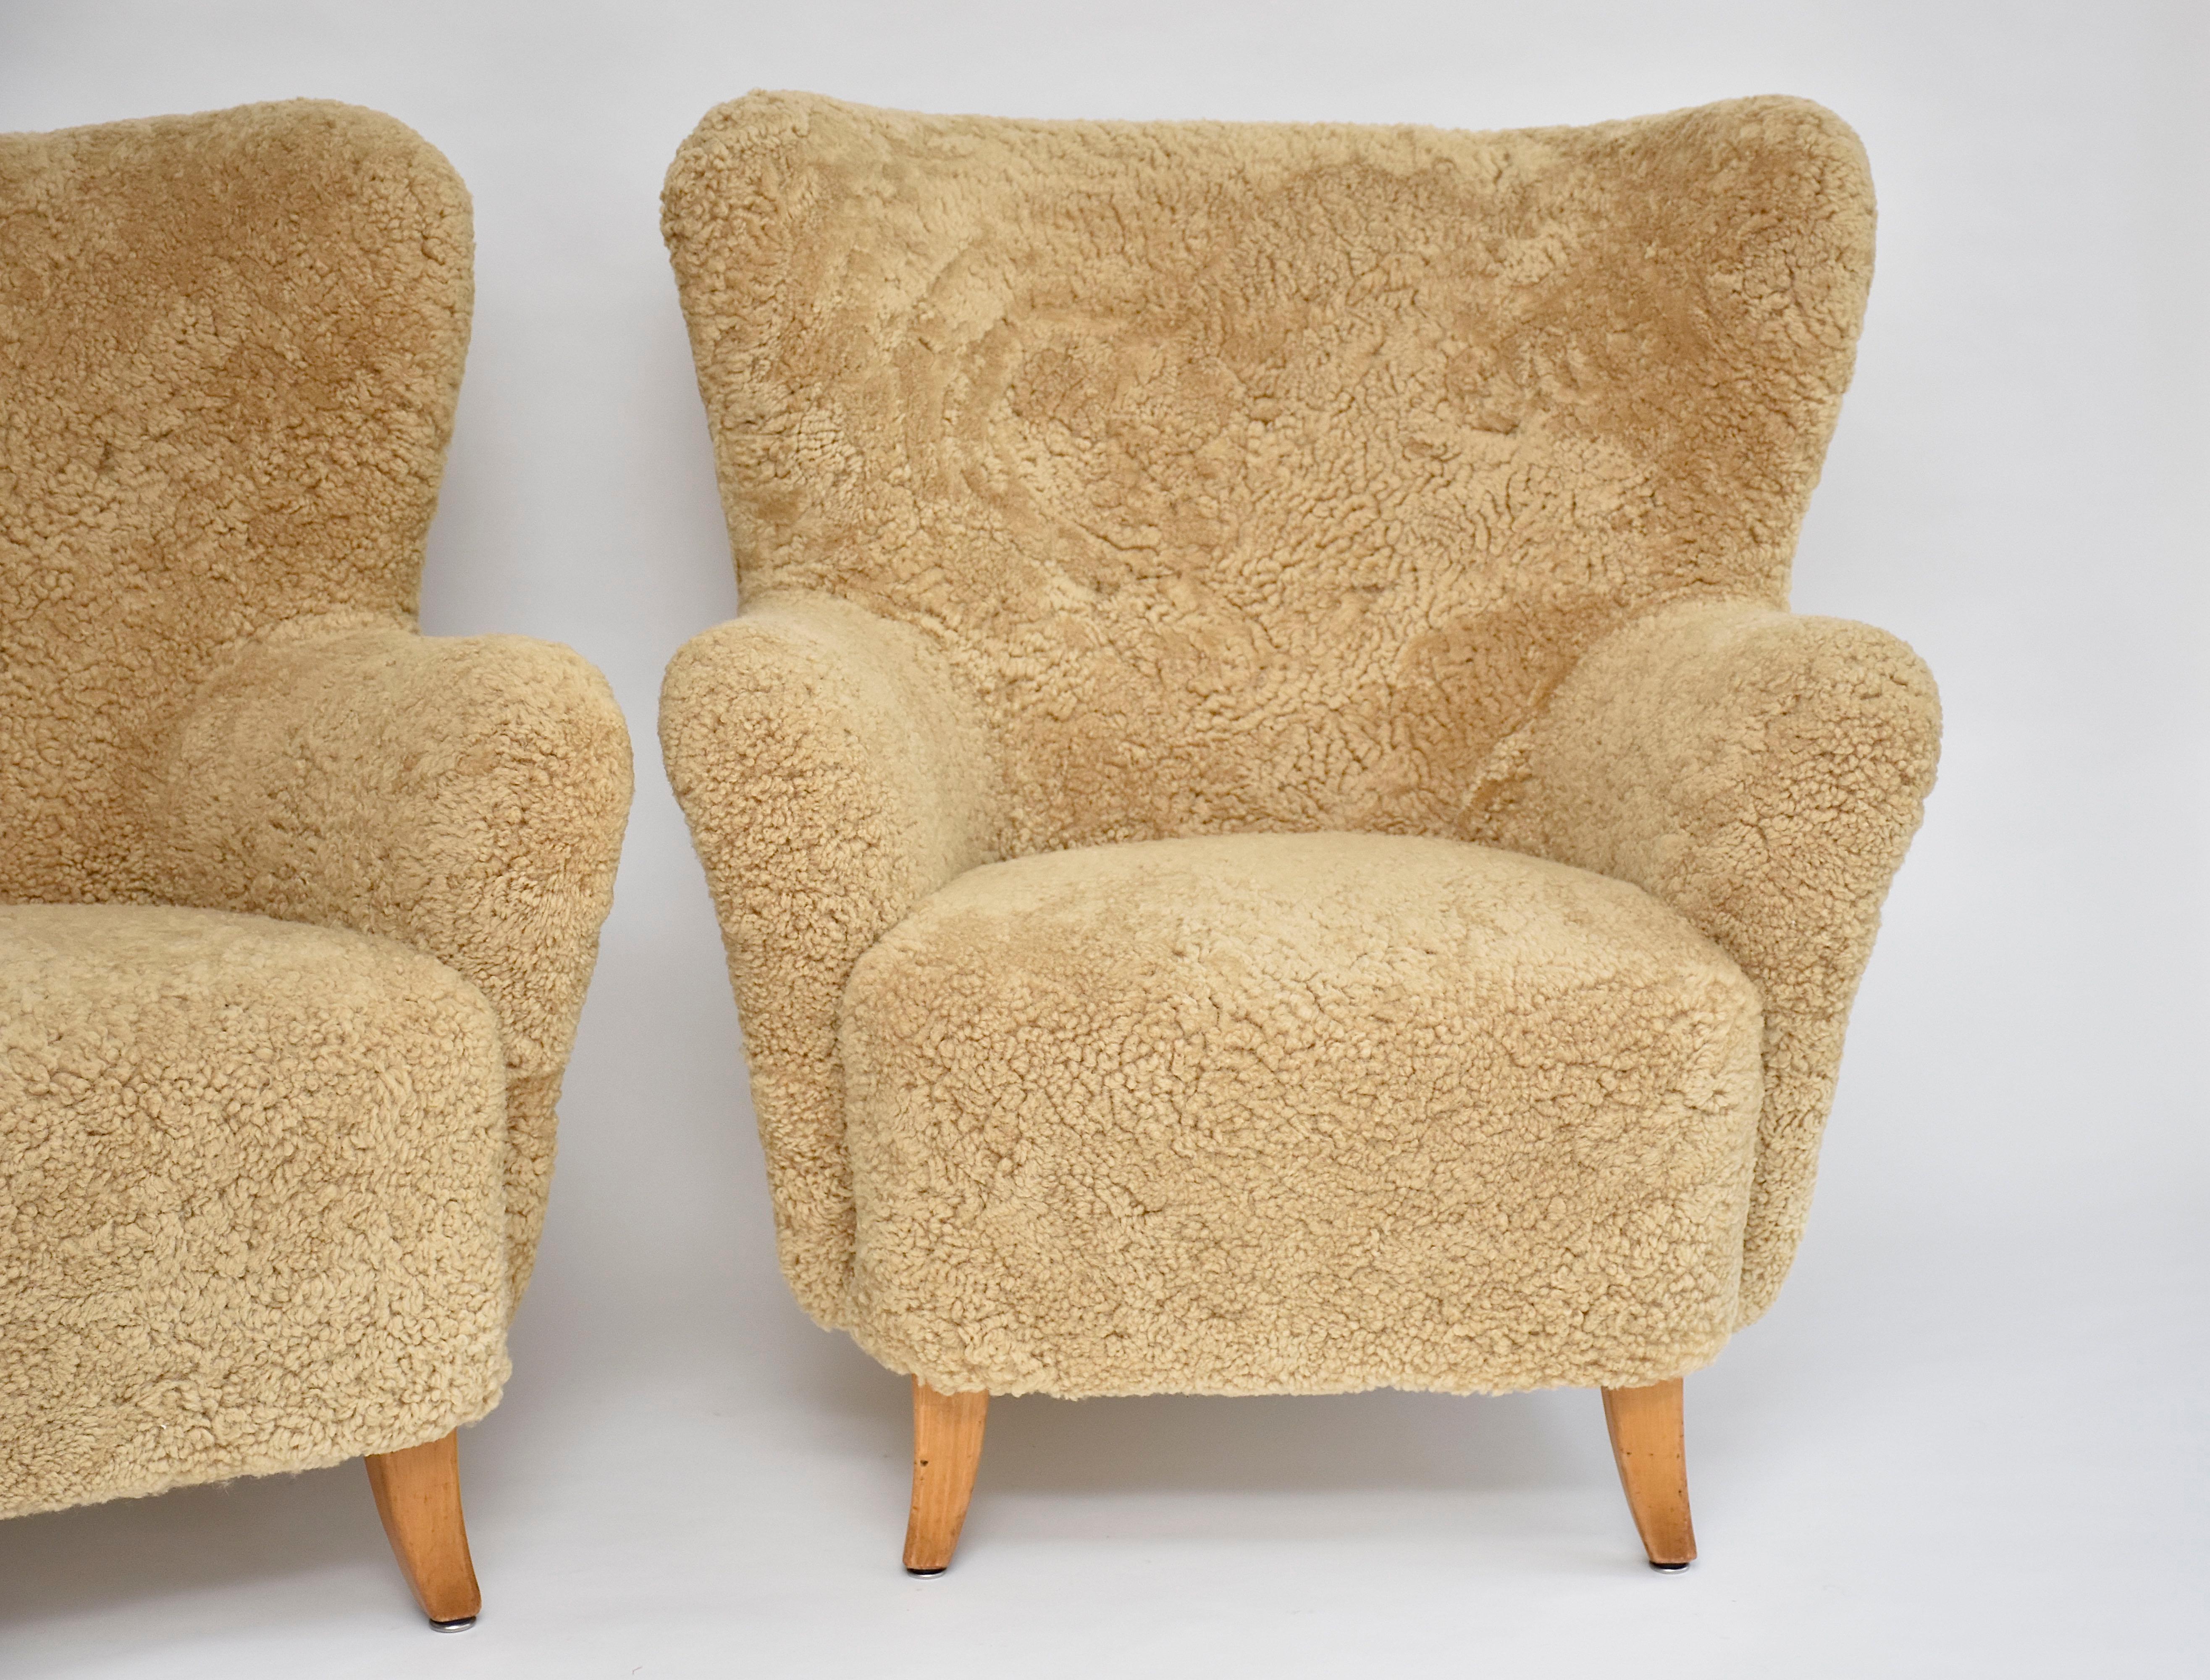 Très belle et unique paire de fauteuils 'Laila' conçue par le célèbre designer finlandais Ilmari Lappalainen (1918-2006) pour Asko en 1948 - entreprise de meubles de haute qualité.
Cette paire emblématique est nouvellement recouverte d'une peau de